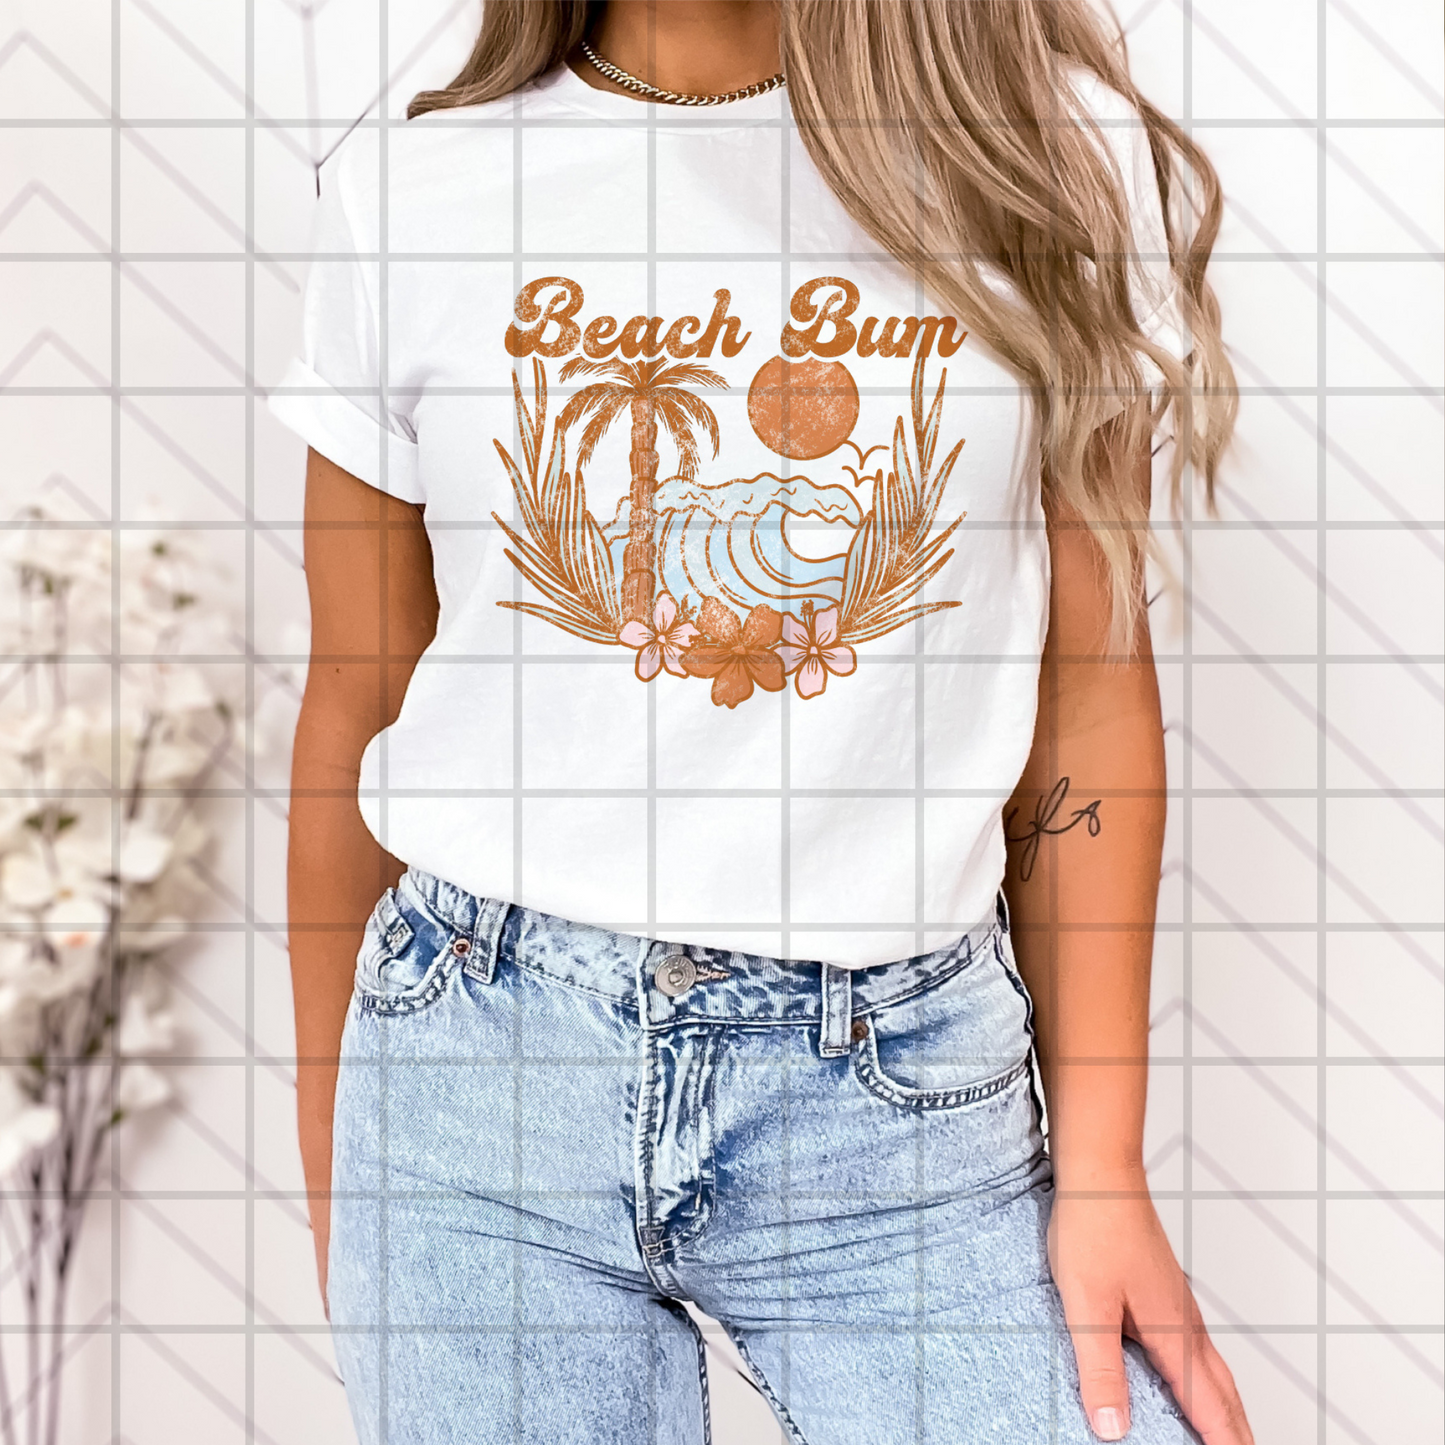 Boho Beach Day PNG Design